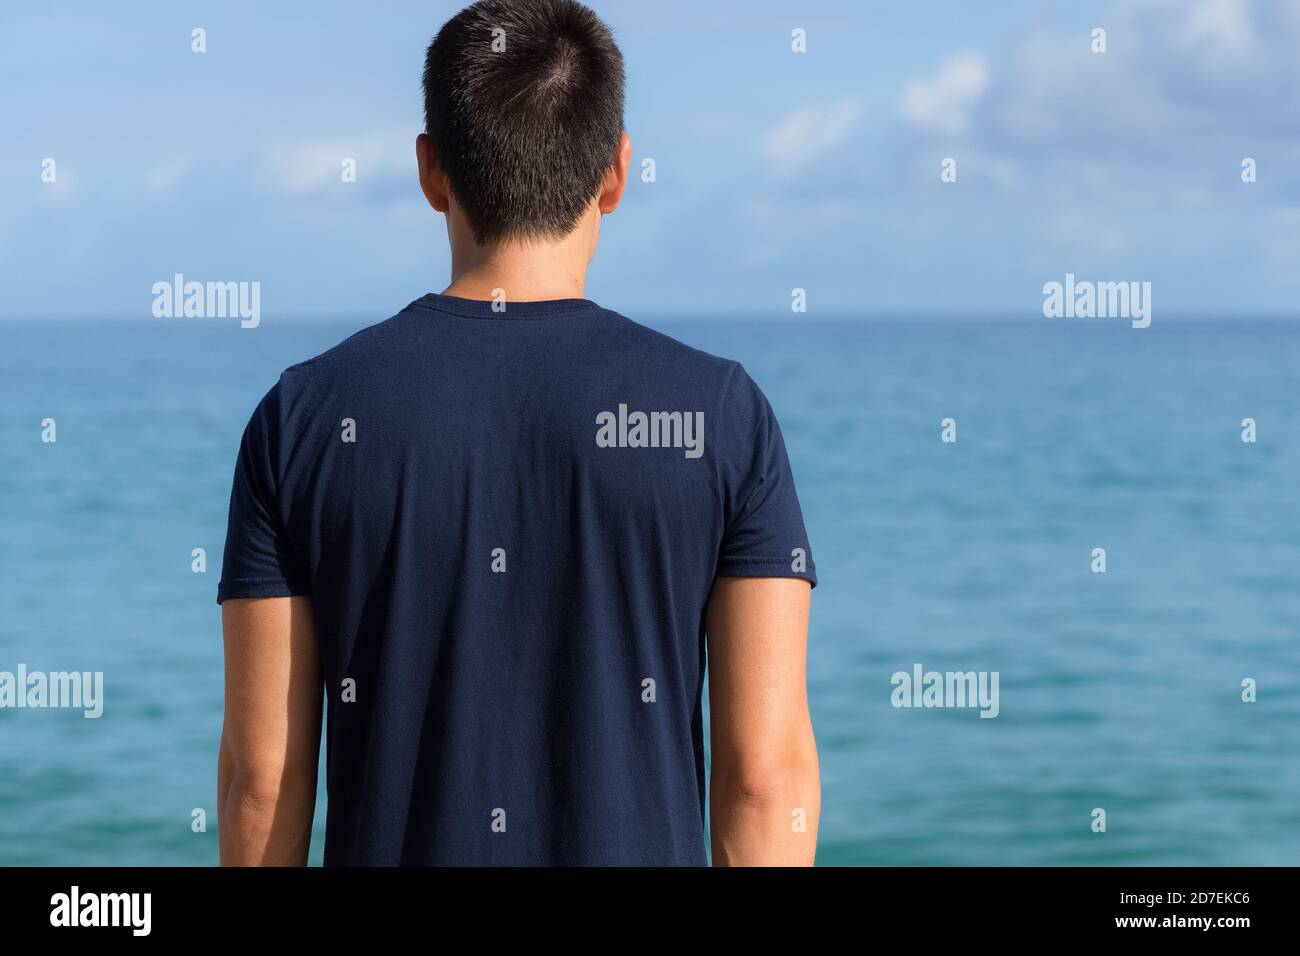 Denkender junger Mann, der zum Meereshorizont blickt. Freiheit und Kontemplation. Stockfoto